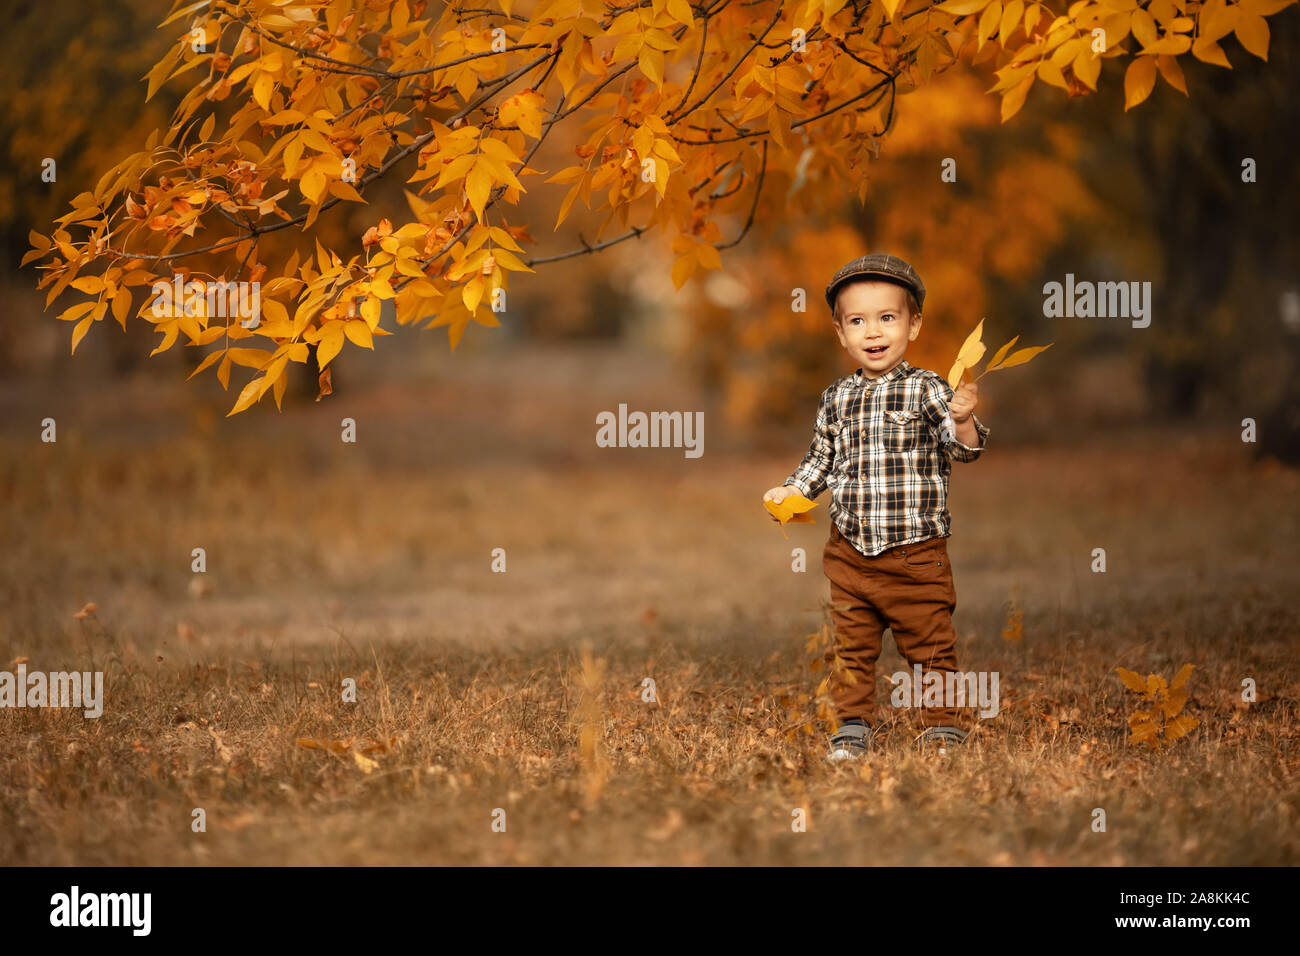 Herbst Portrait von glücklichen kleinen Jungen in karierte Kappe spielt mit gelb Blatt im Freien Stockfoto